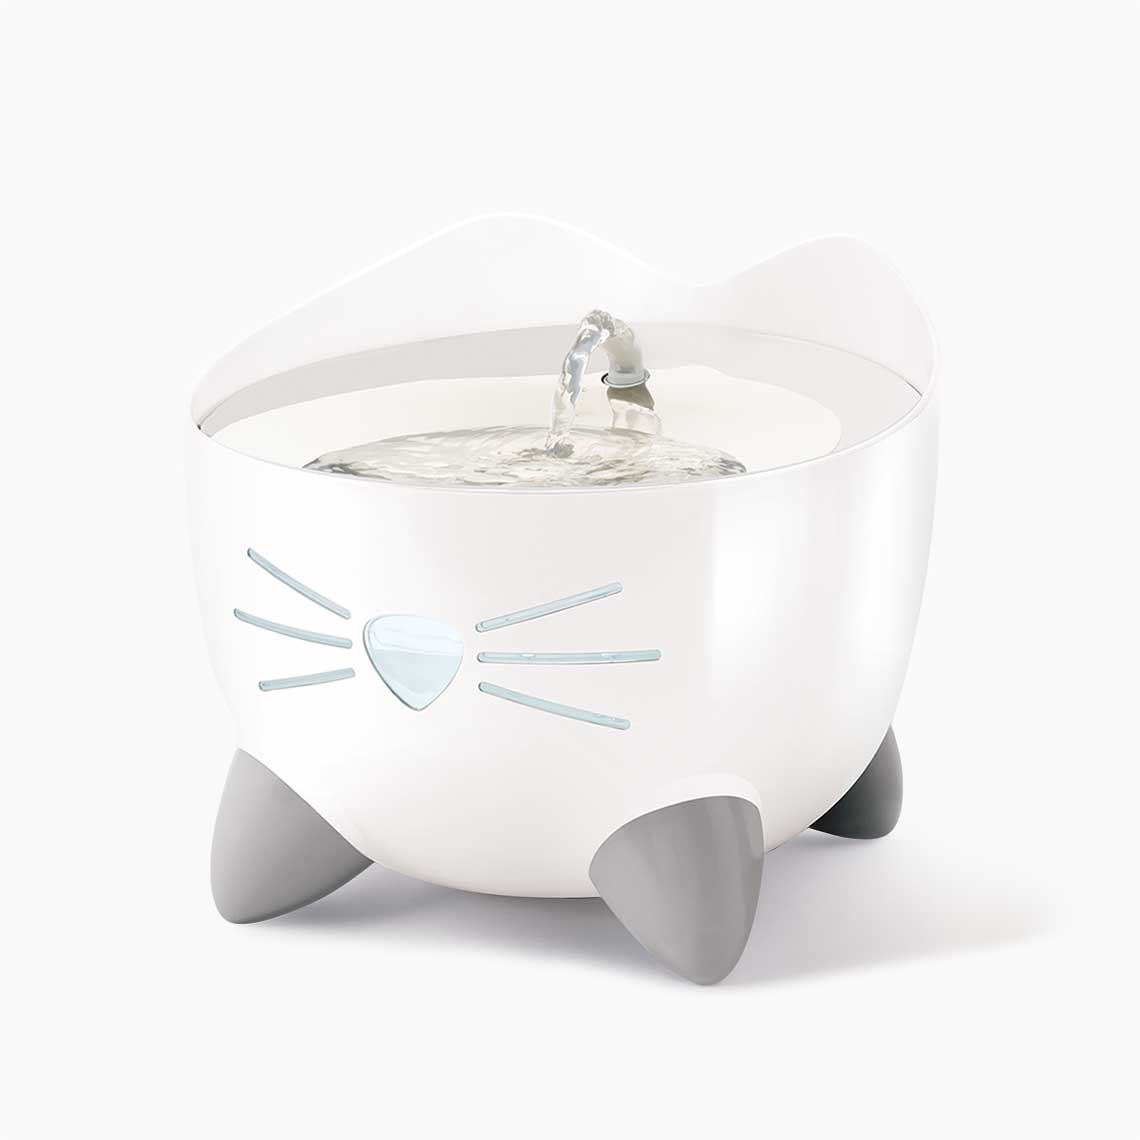 Abreuvoir / fontaine Catit PIXI avec dessus en acier inoxydable - Fontaine pour chats